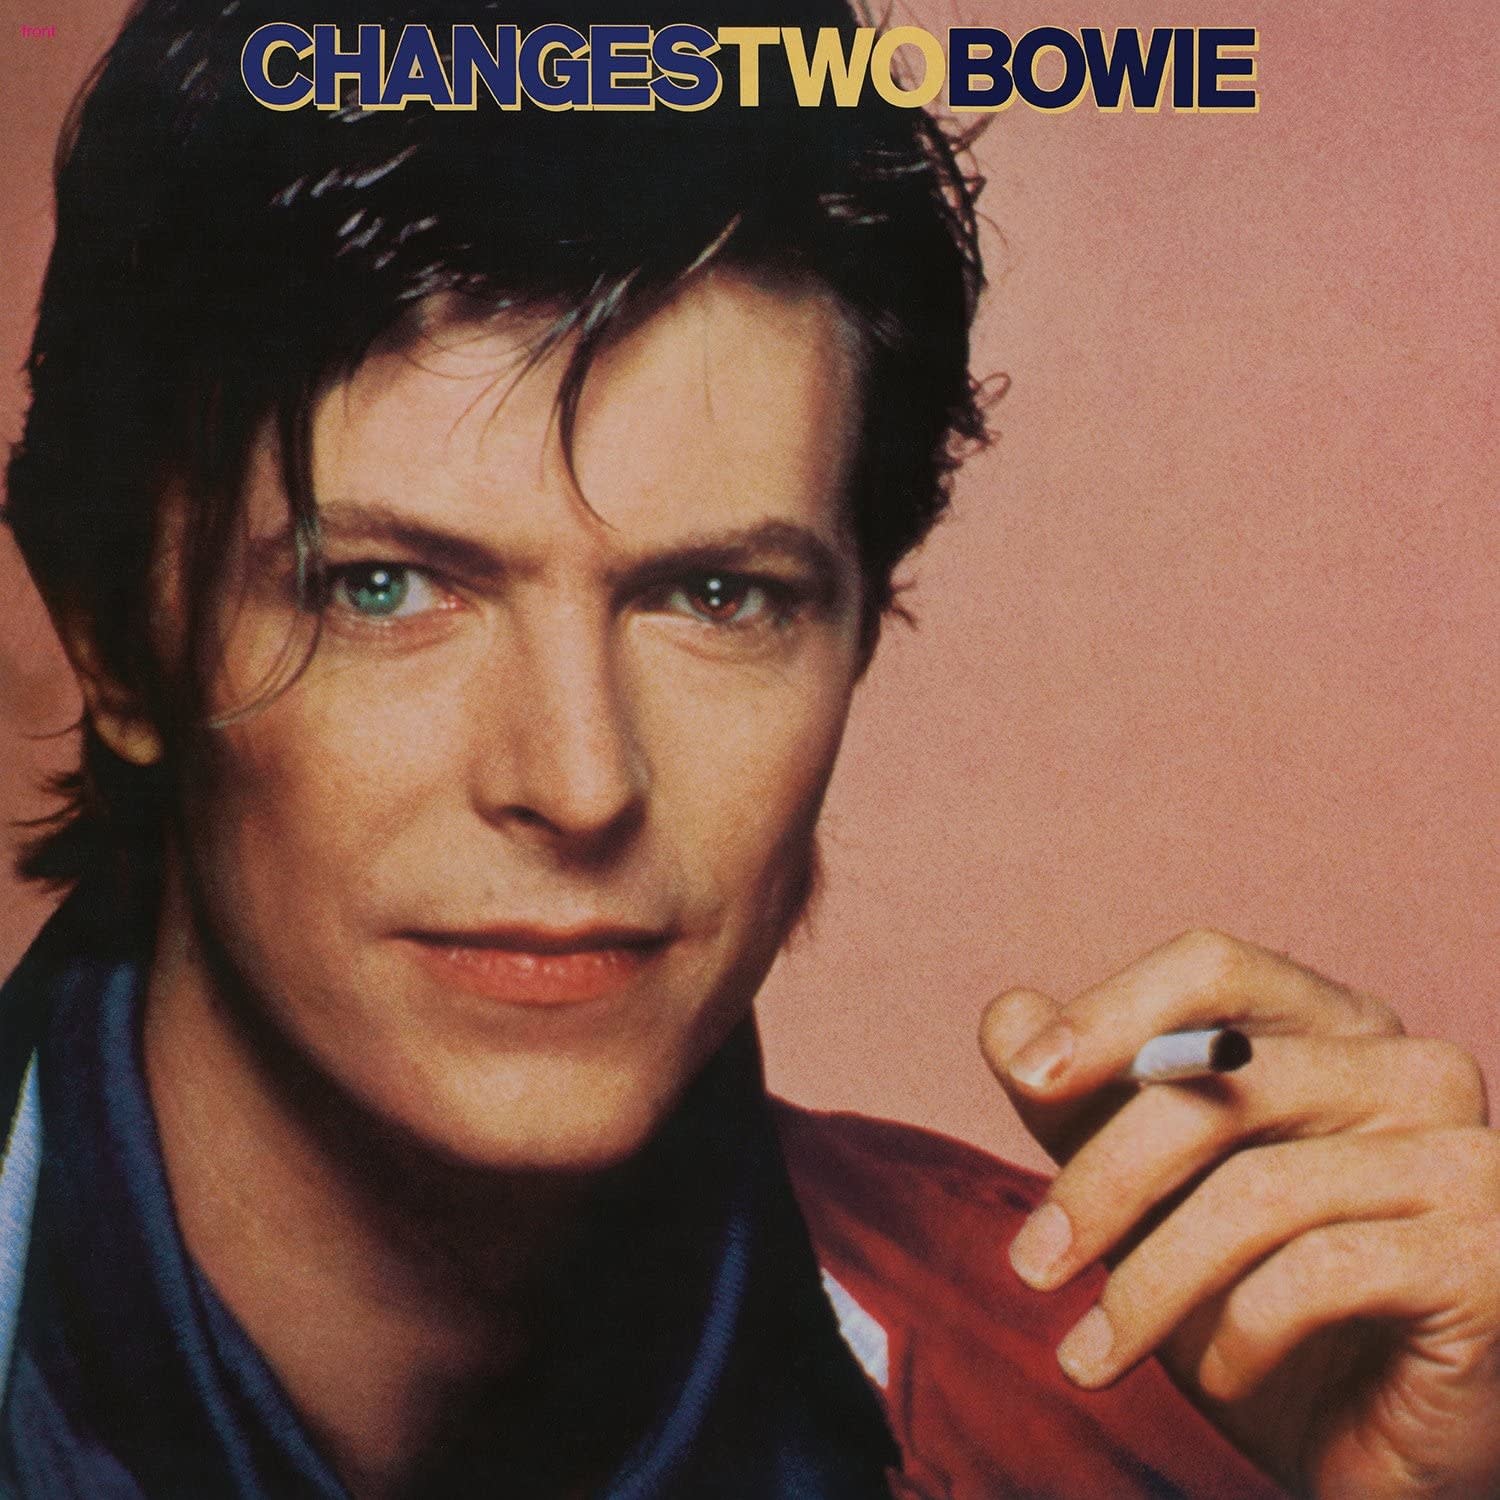 David Bowie – ChangesTwoBowie